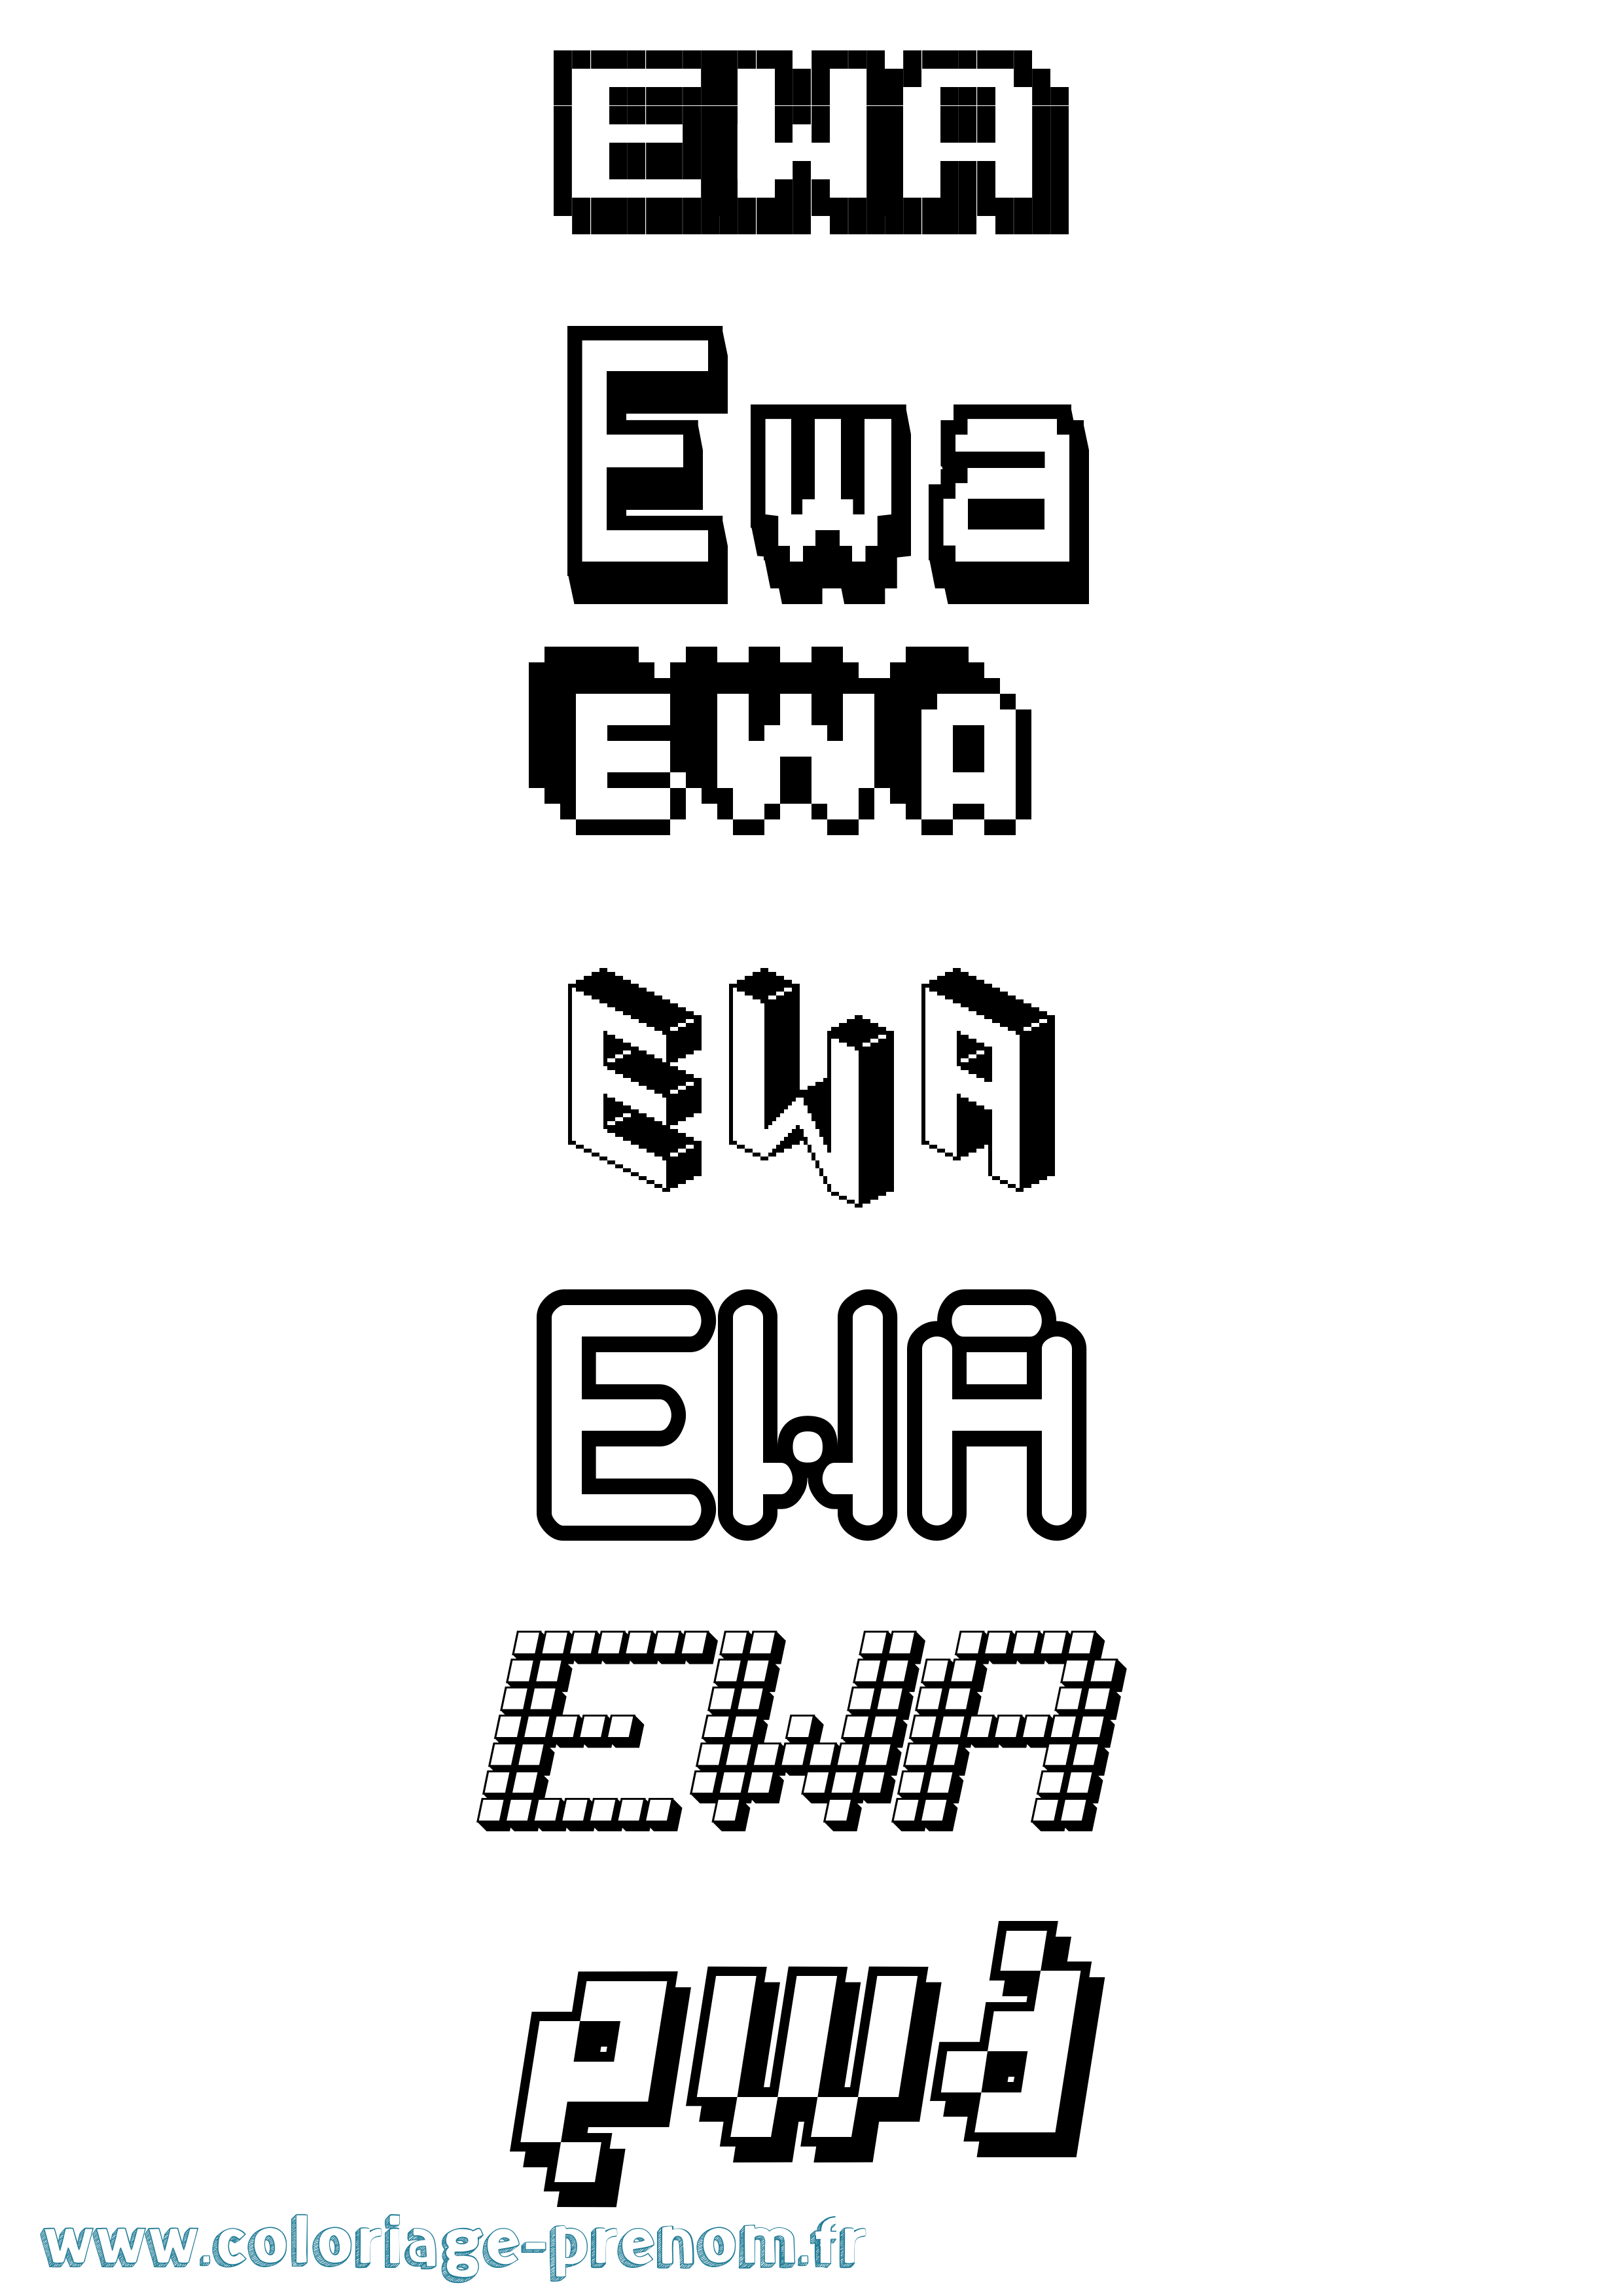 Coloriage prénom Ewa Pixel